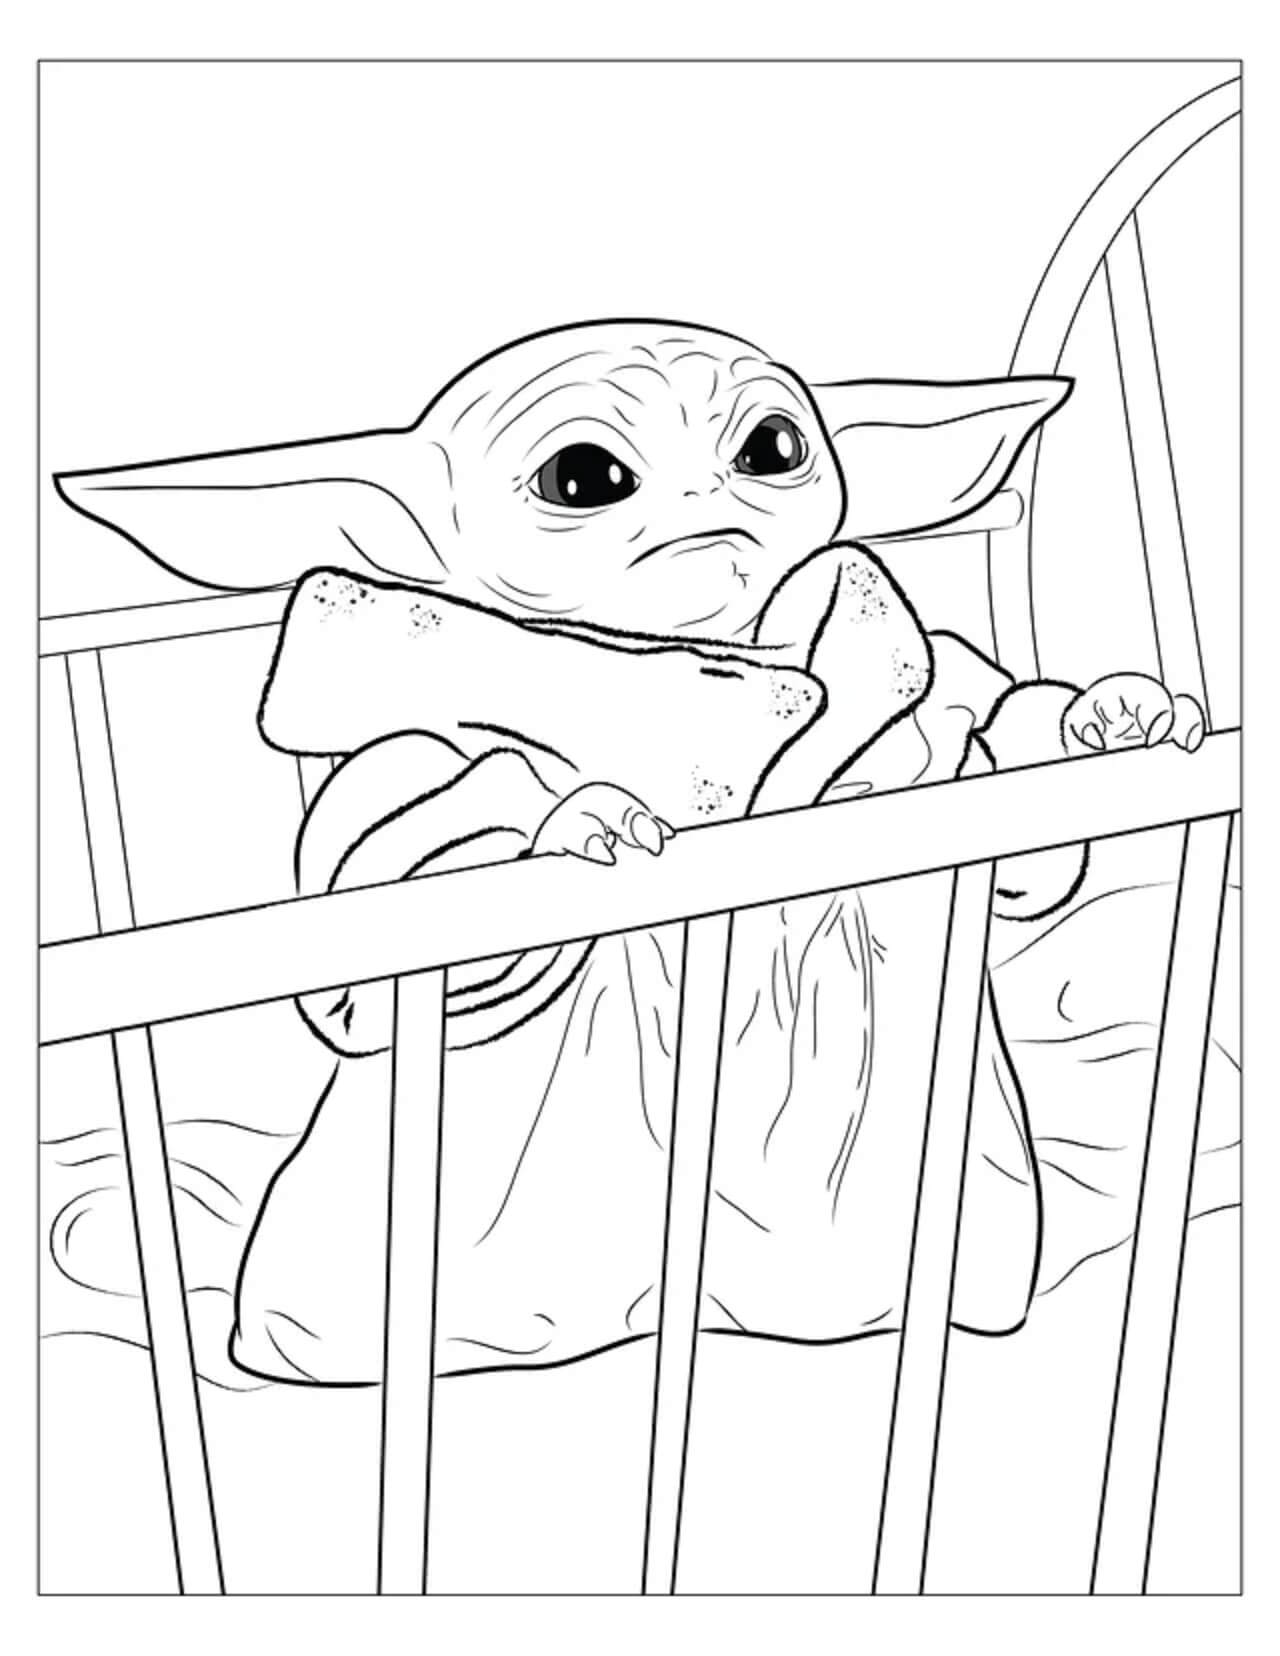 Baby Yoda i Vuggen Tegninger til Farvelægning